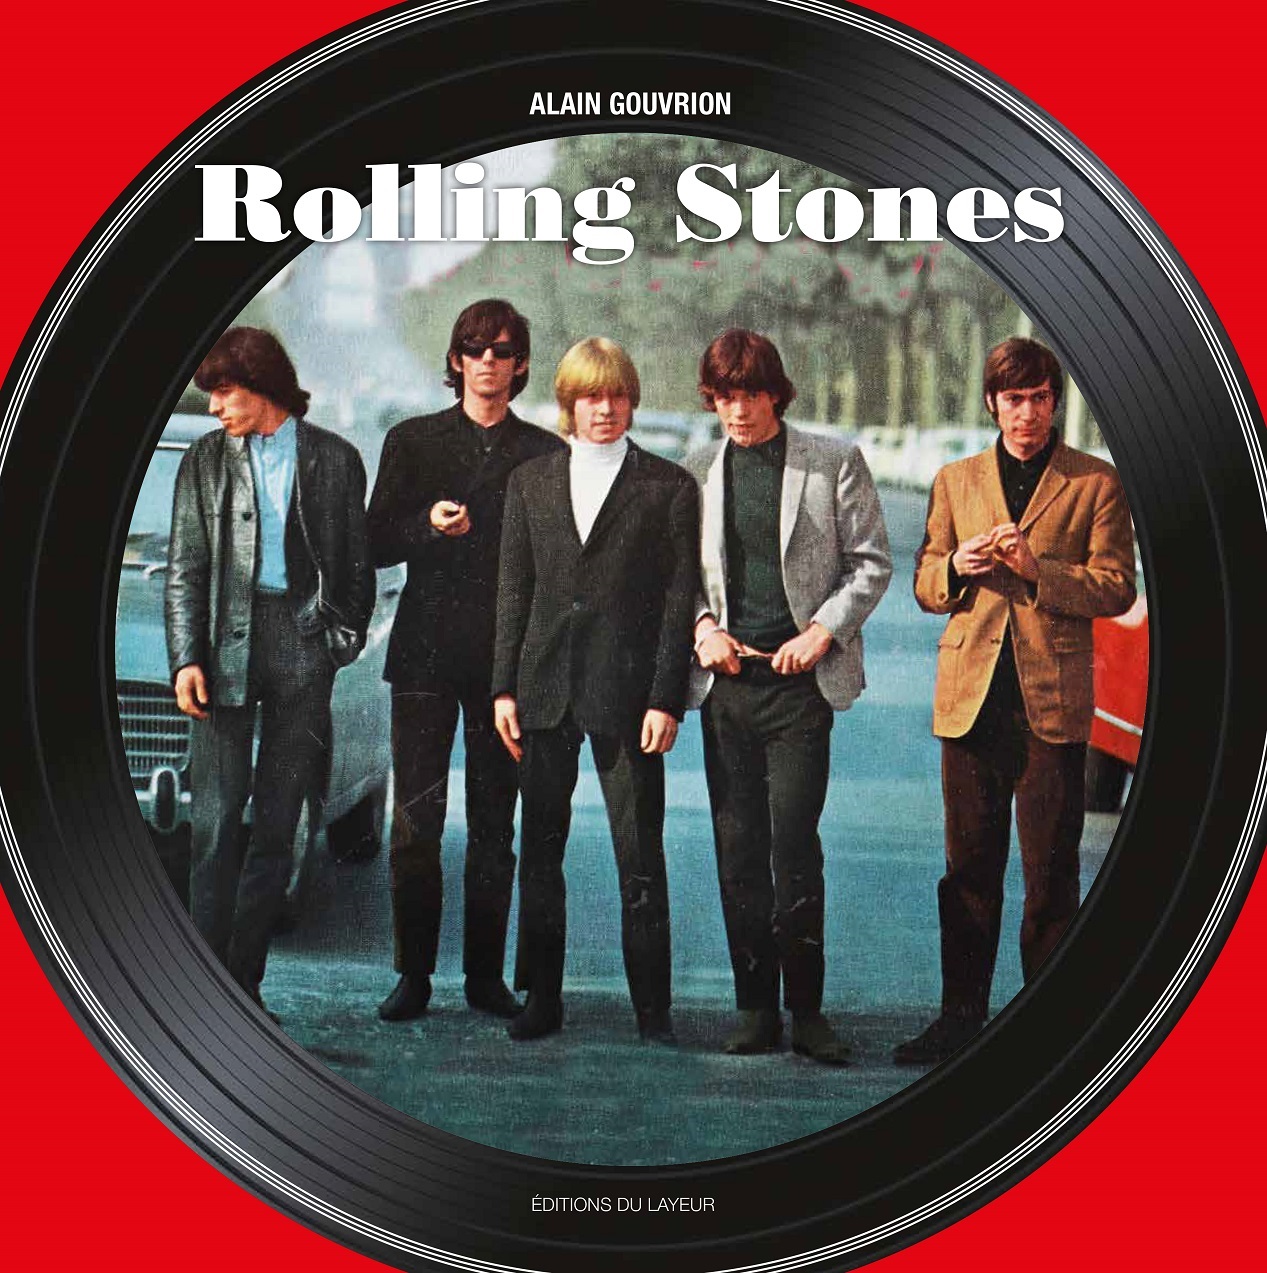 Livre sur les Rolling Stones sorti le 18 novembre 2021